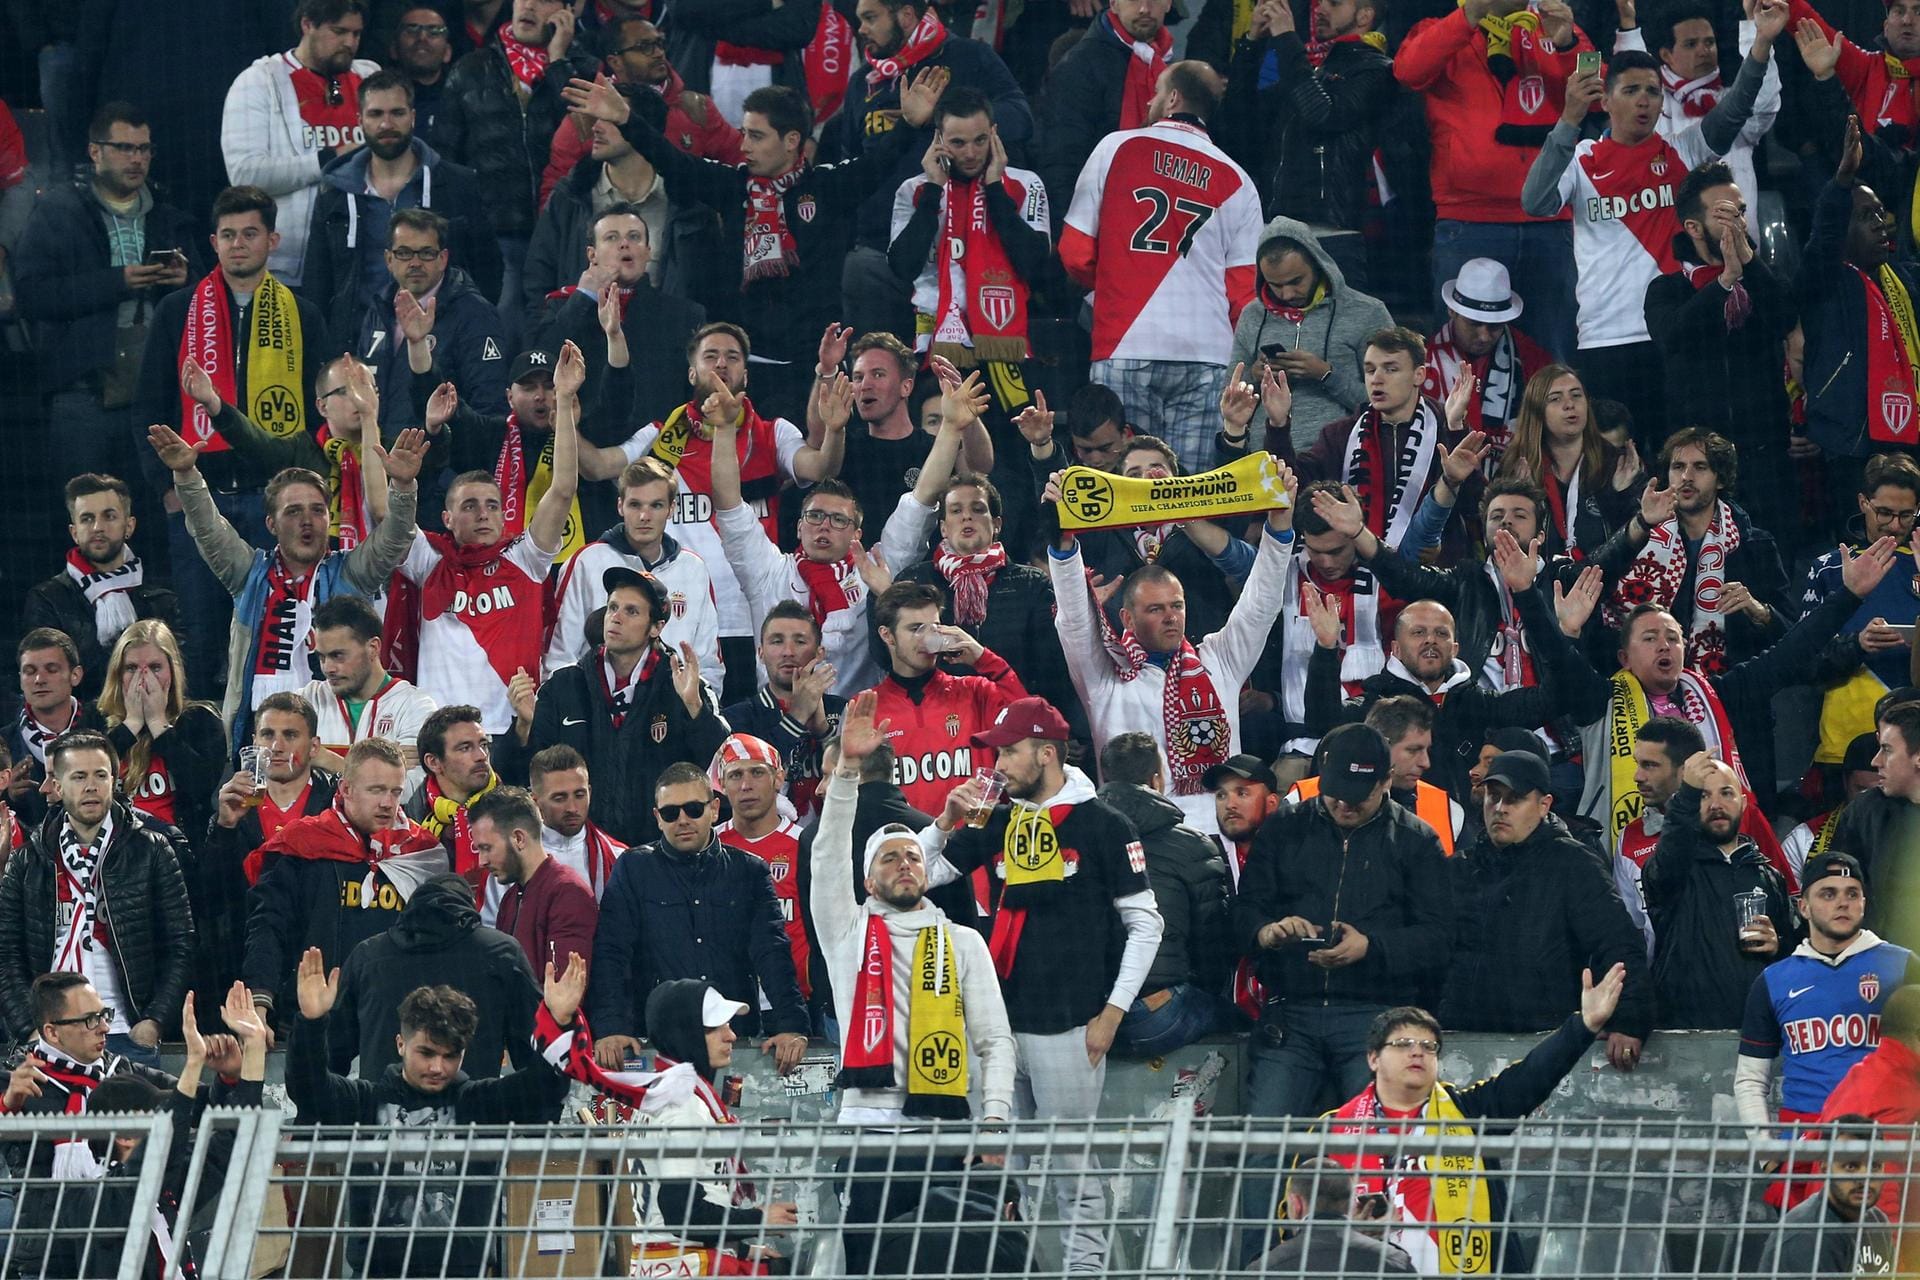 Gänsehautmomente: Fans des AS Monaco zeigen ihre Solidarität mit den Dortmundern.